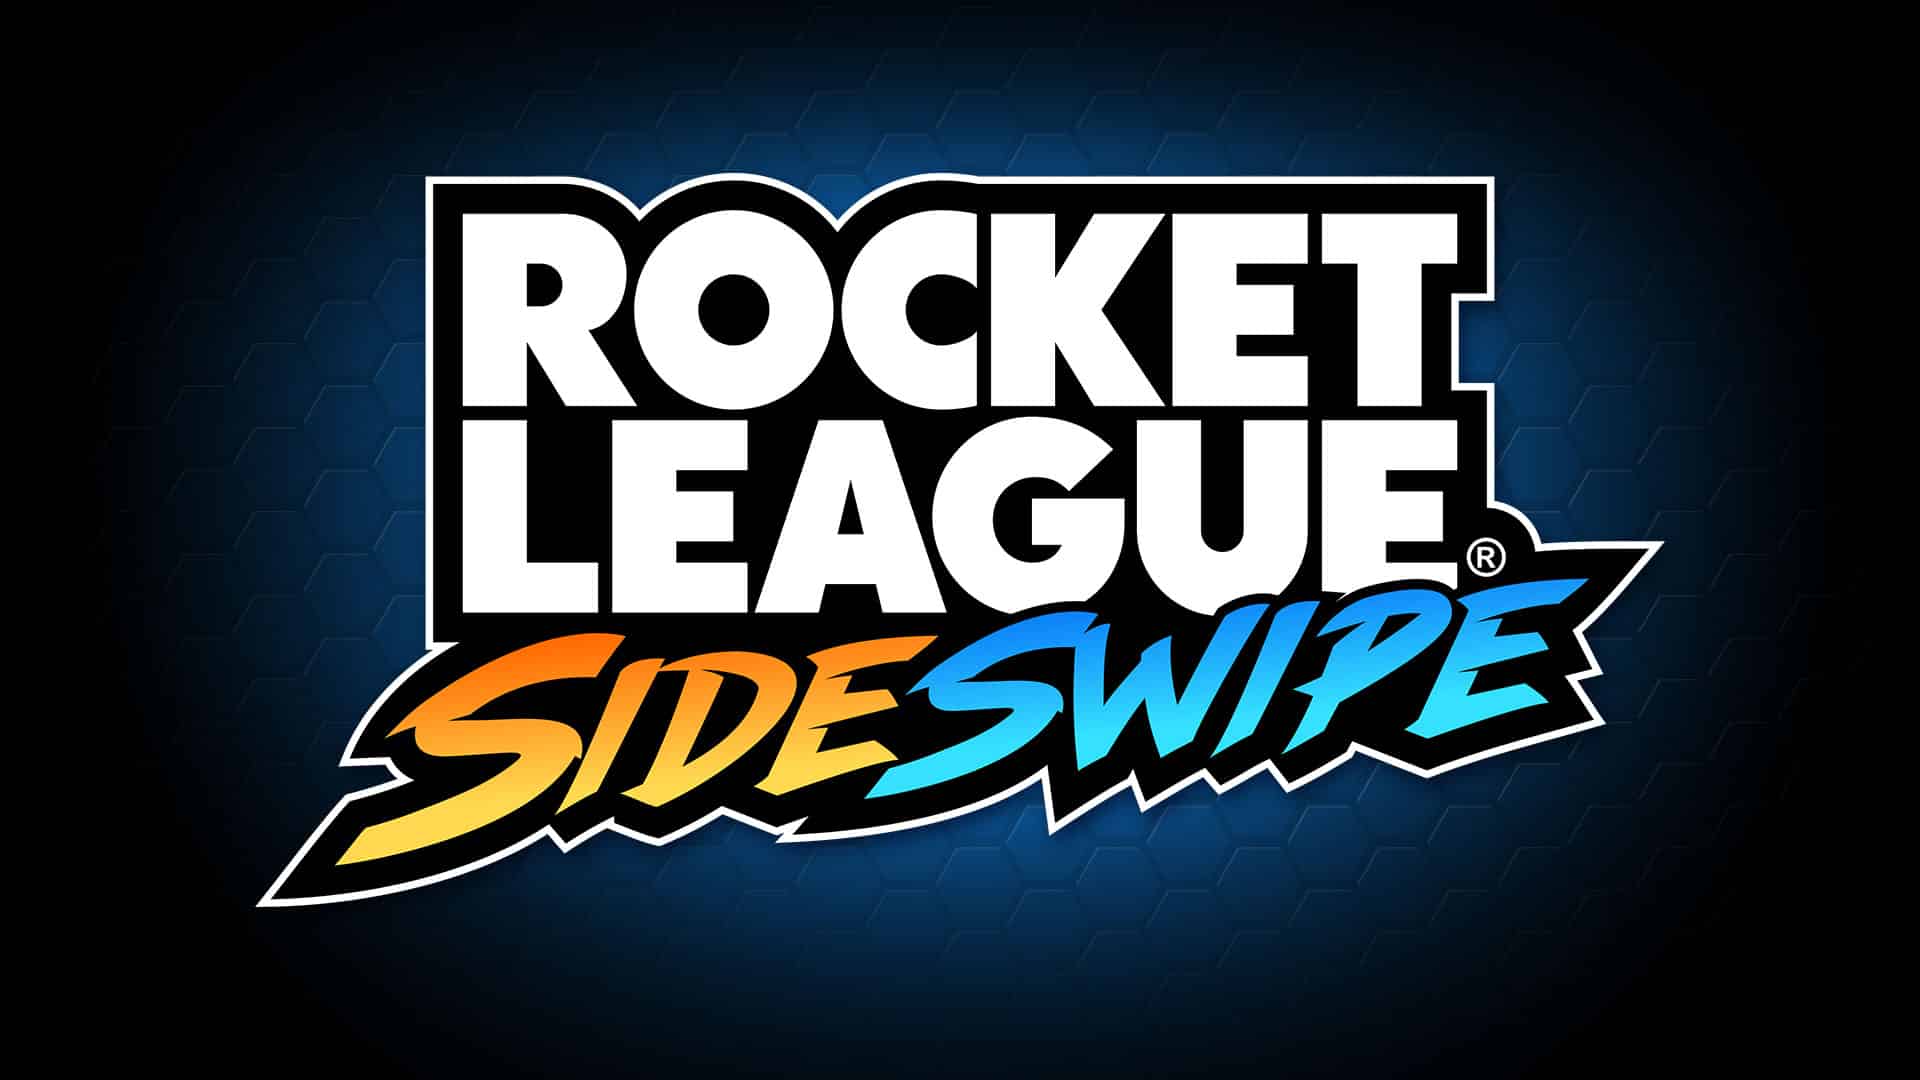 Rocket league side swipe